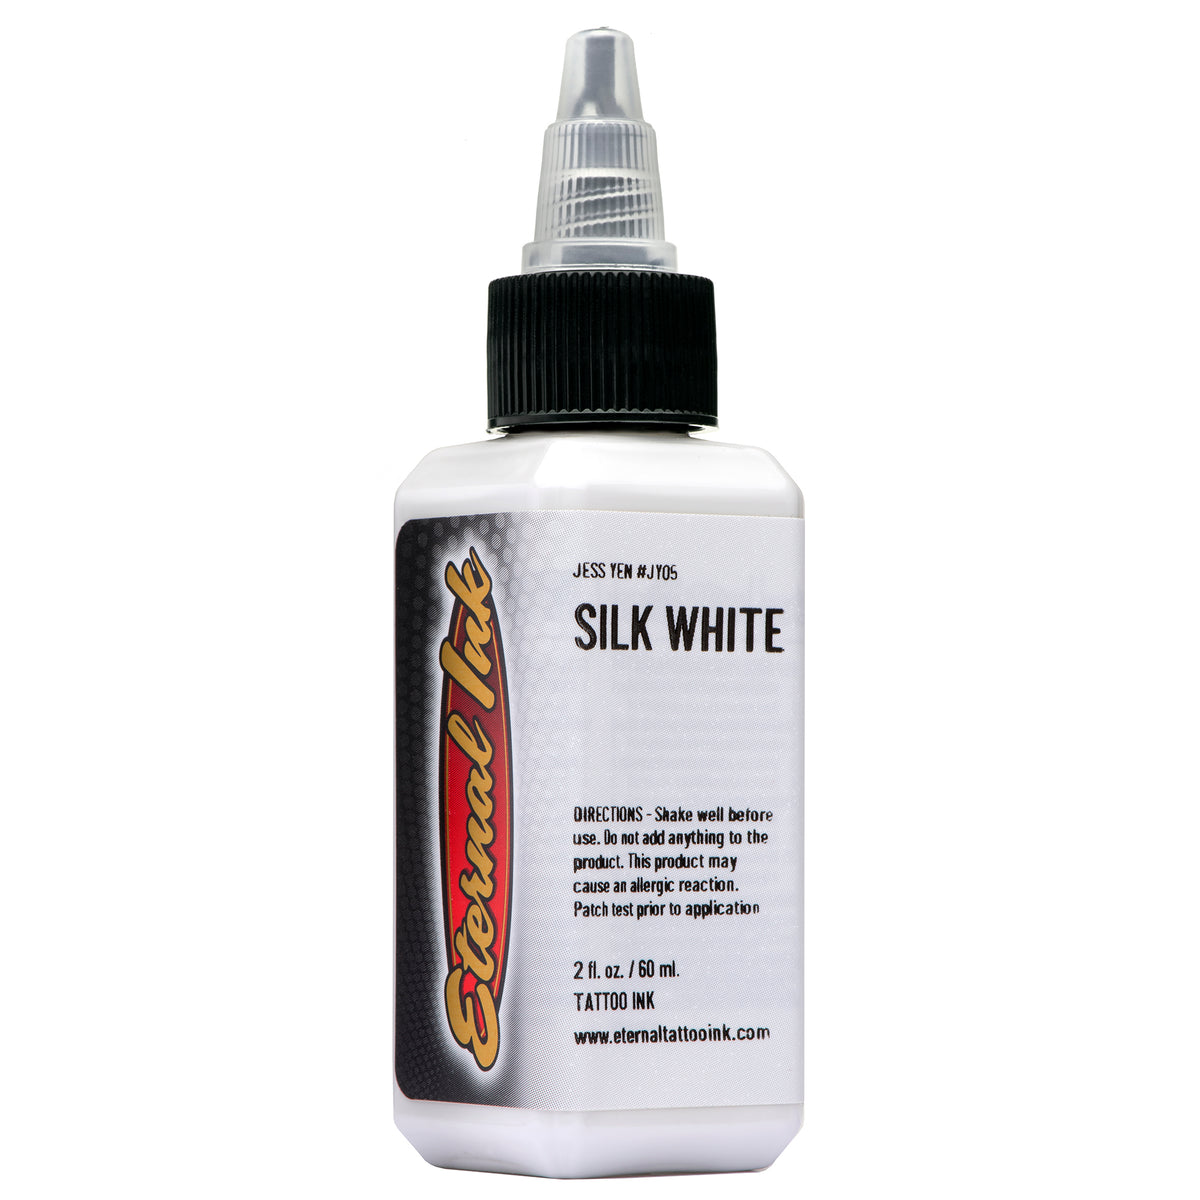 Silk White